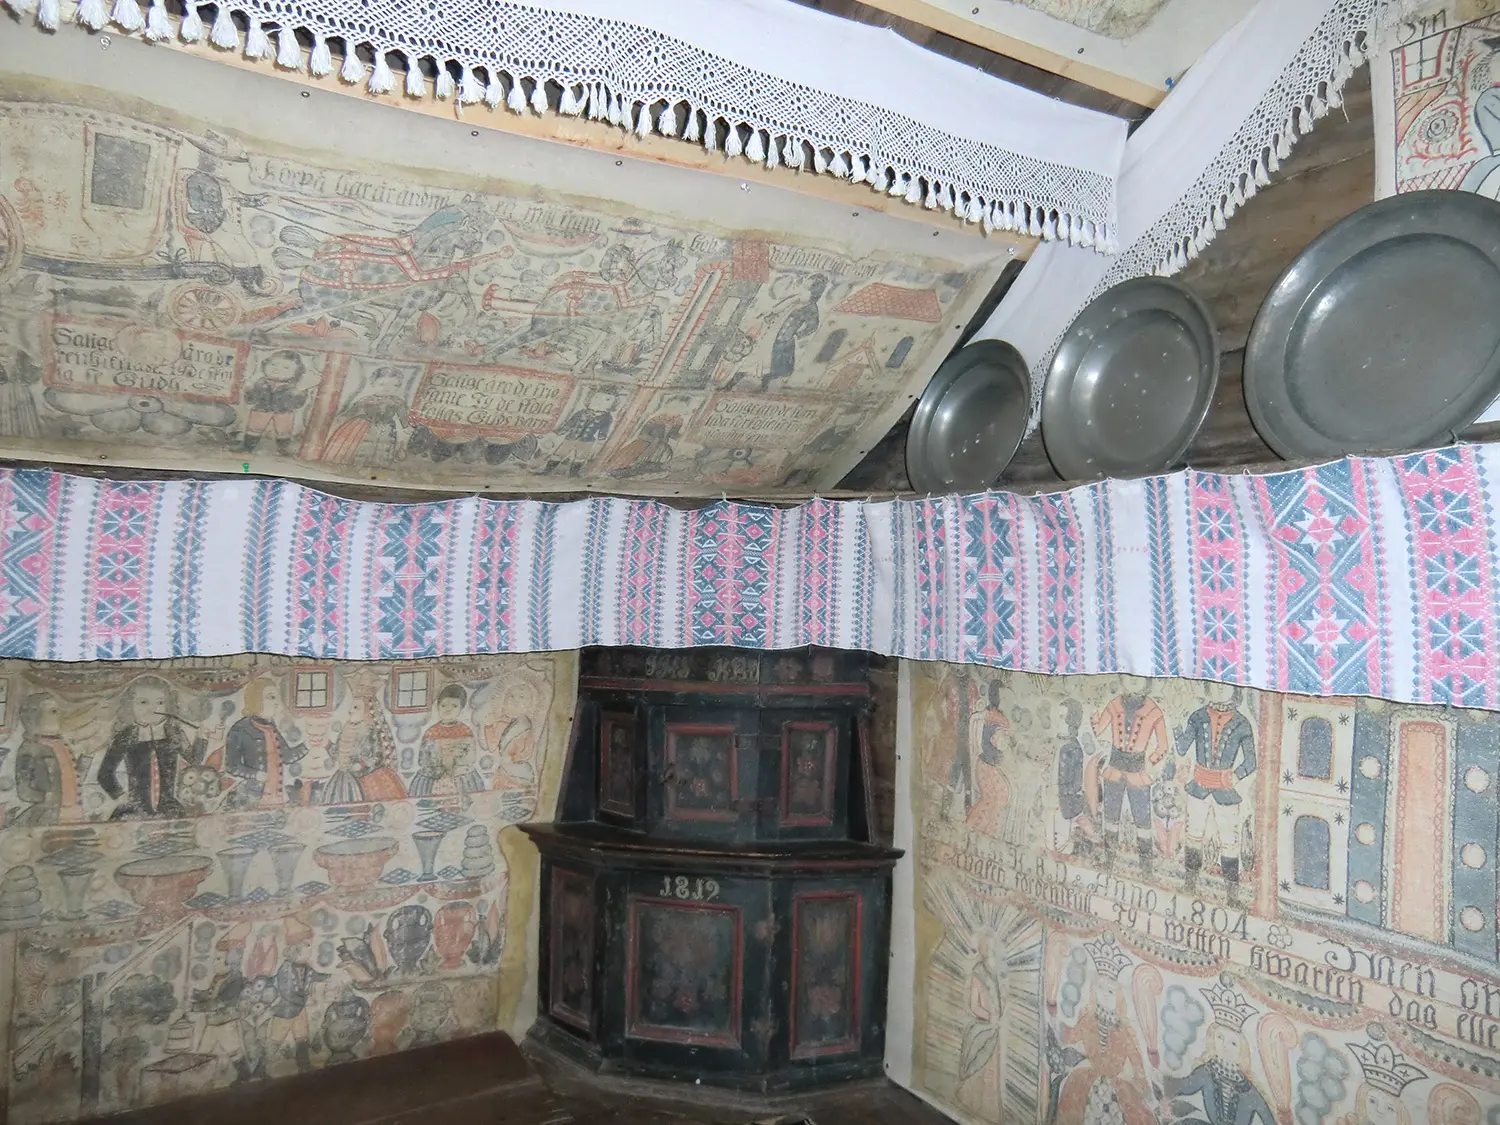 Interiör från den historiska byggnaden Bollaltebygget med opphämtaväv och bonadsmålningar som utgår från ett hörn och fortsätter på båda sidor längs väggen.